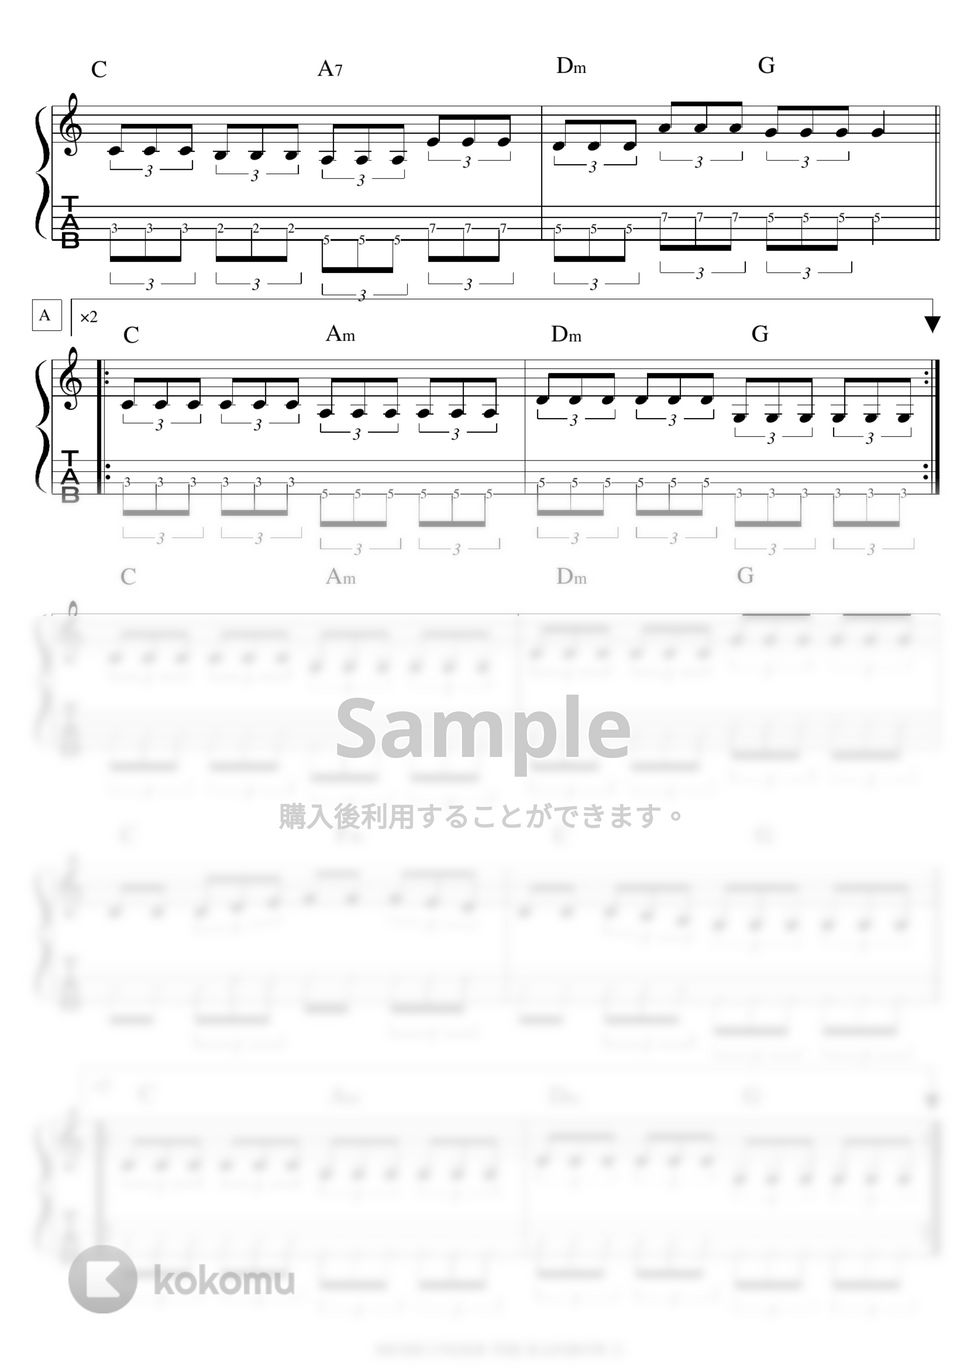 Hi-STANDARD - MOSH UNDER THE RAINBOW ベースTAB 演奏動画あり by バイトーン音楽教室